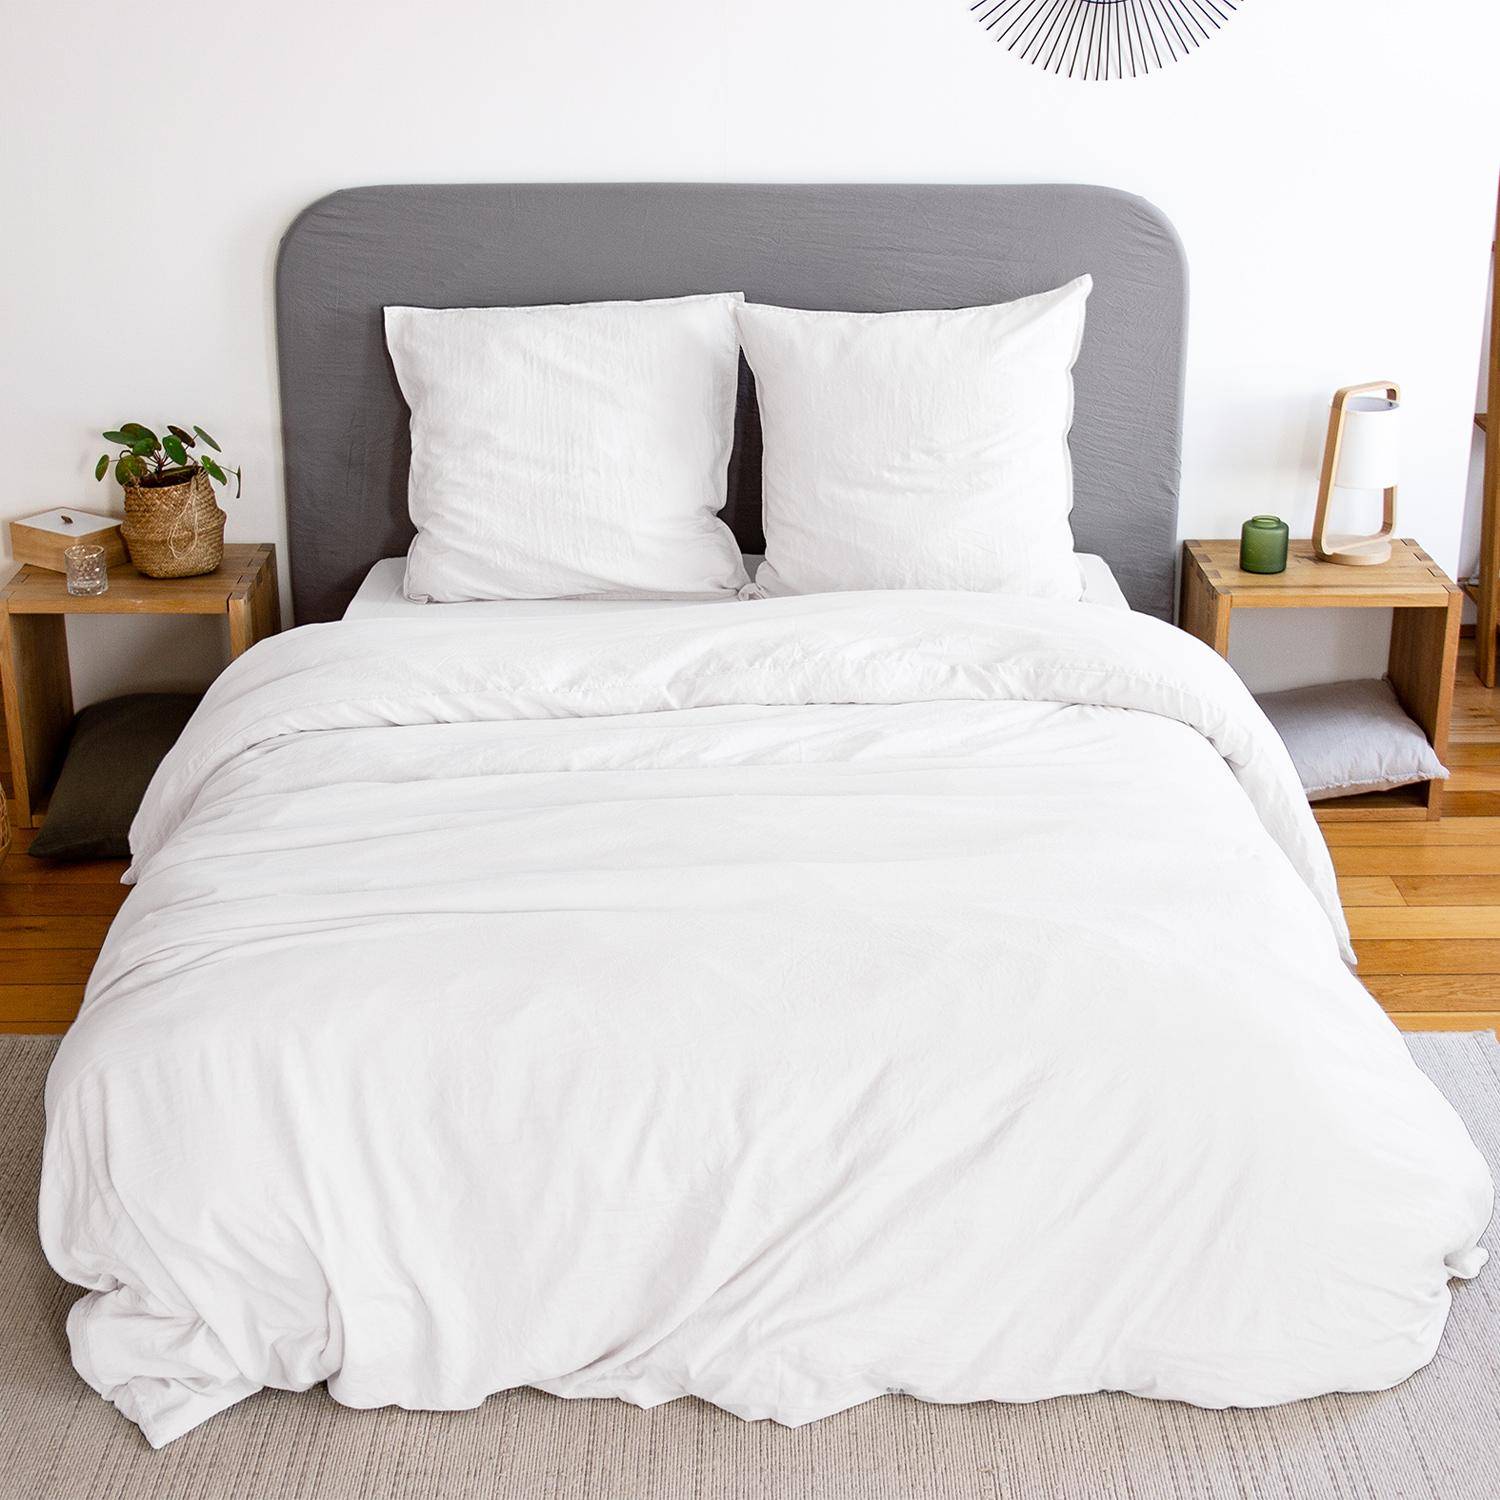 Parure de lit en microfibre lavée, blanc, 260 x 240cm pour lit 2 places avec 1 housse de couette et 2 taies d'oreillers,sweeek,Photo1